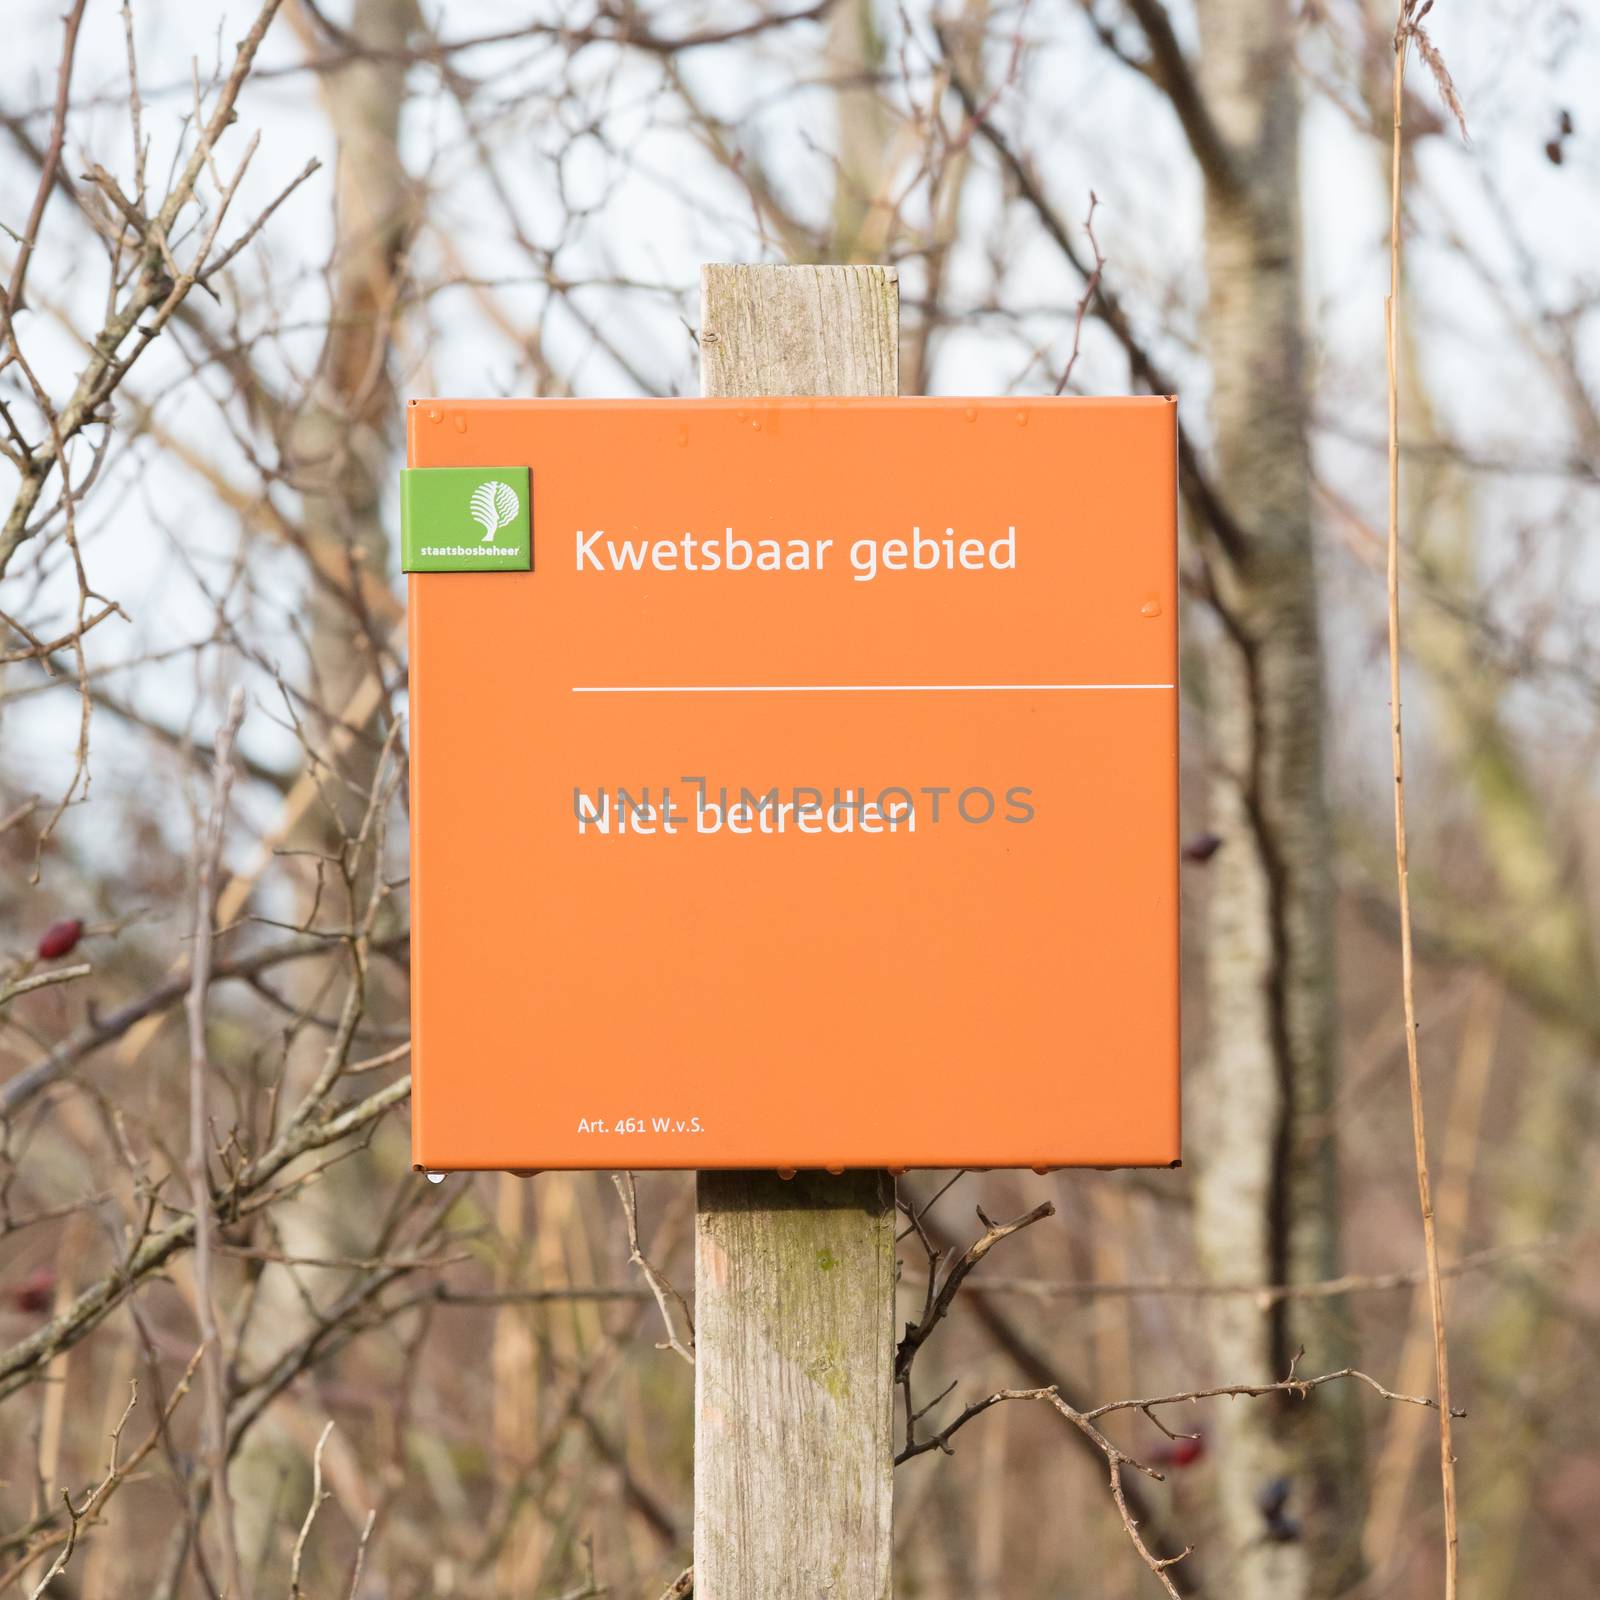 Lauwersoog; tourist sign saying 'no entry (niet betreden)' by michaklootwijk